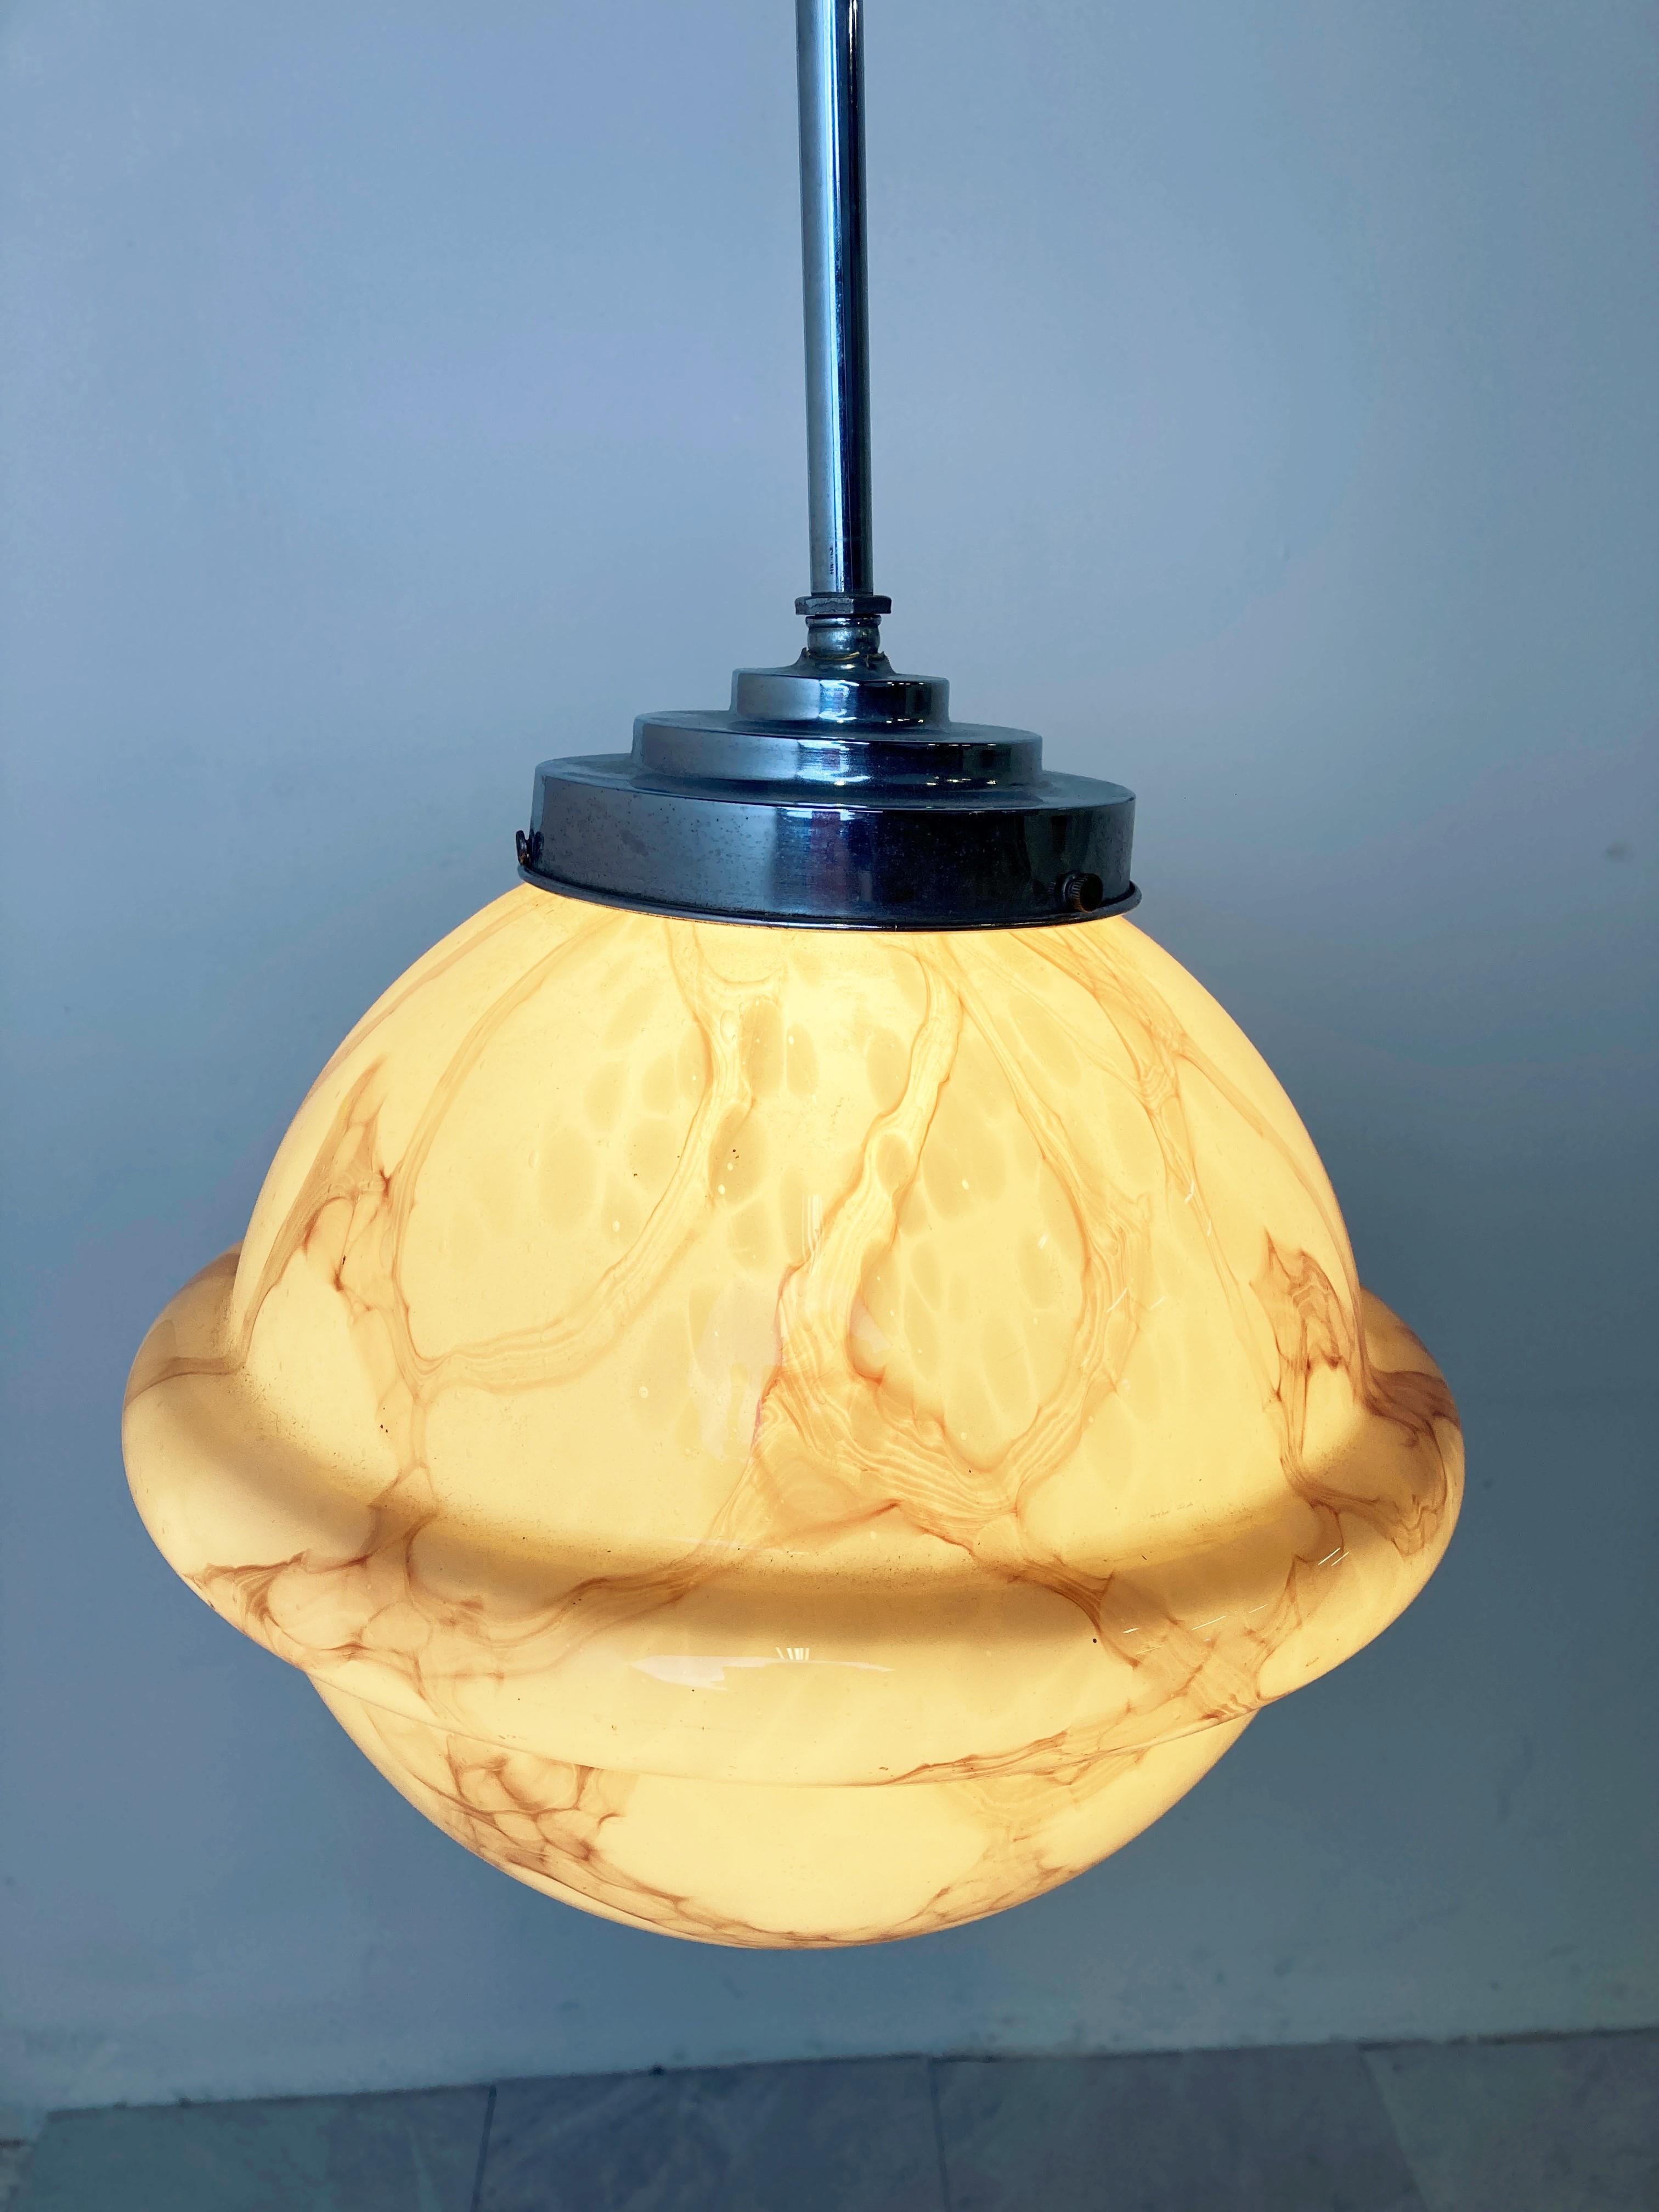 Antike Art-Déco-Hängeleuchte mit einem schönen marmorierten Opal-Lampenschirm, der ein wunderschönes Licht abgibt.

Diese Lampe ist sehr typisch für die Art-Deco-Ära und wurde häufig in Fluren, Büros oder größeren öffentlichen Räumen